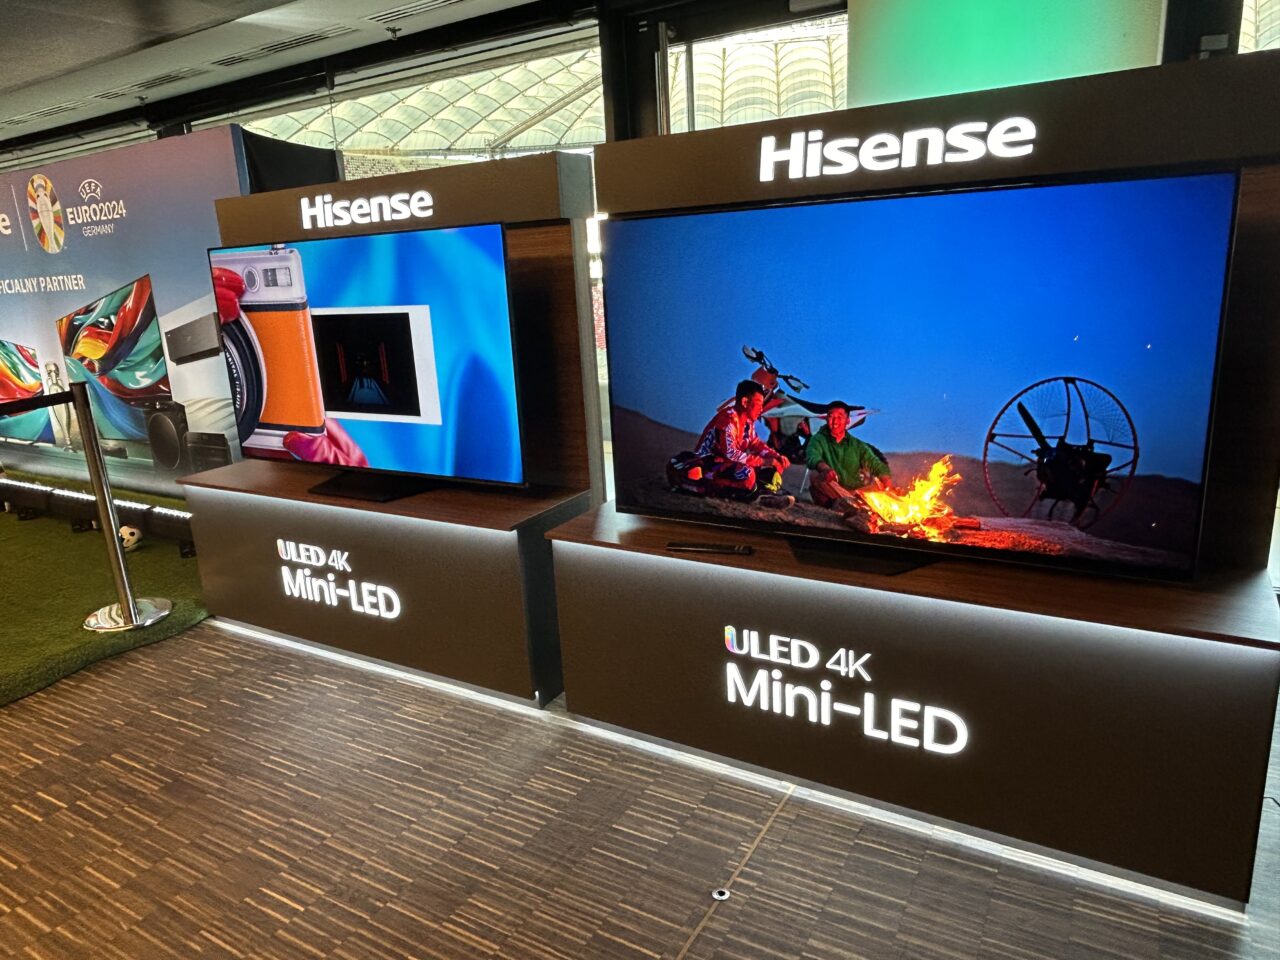 Stoisko z telewizorami marki Hisense, przedstawiające modele ULED 4K Mini-LED z wyświetlanymi kolorowymi obrazami, w tle widoczne plakaty promocyjne UEFA Euro 2024.